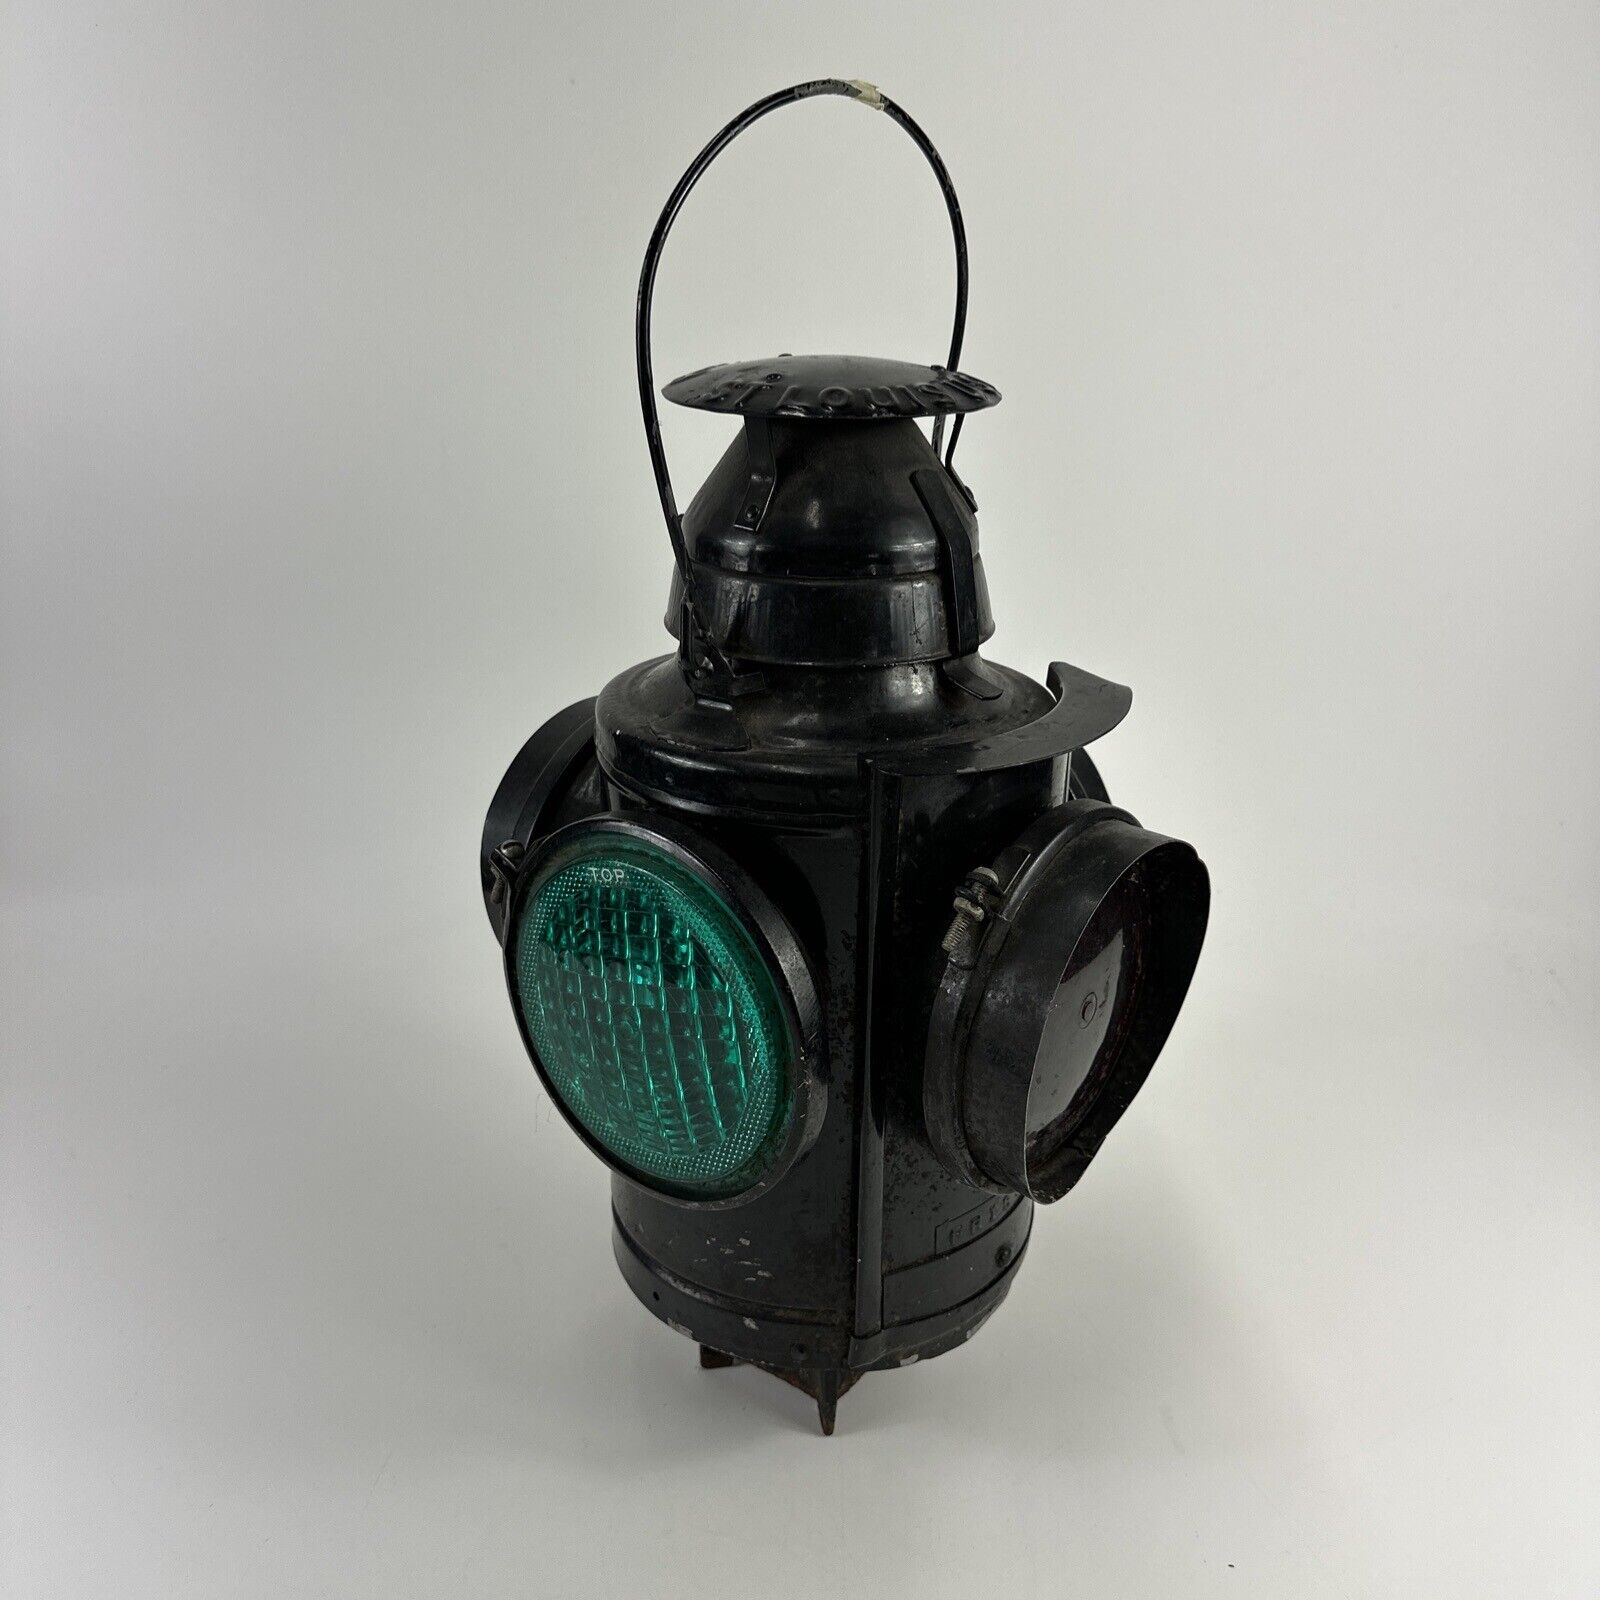 Vintage 1940s Handlan Caboose St. Louis 4 Way Railroad Switch Lantern